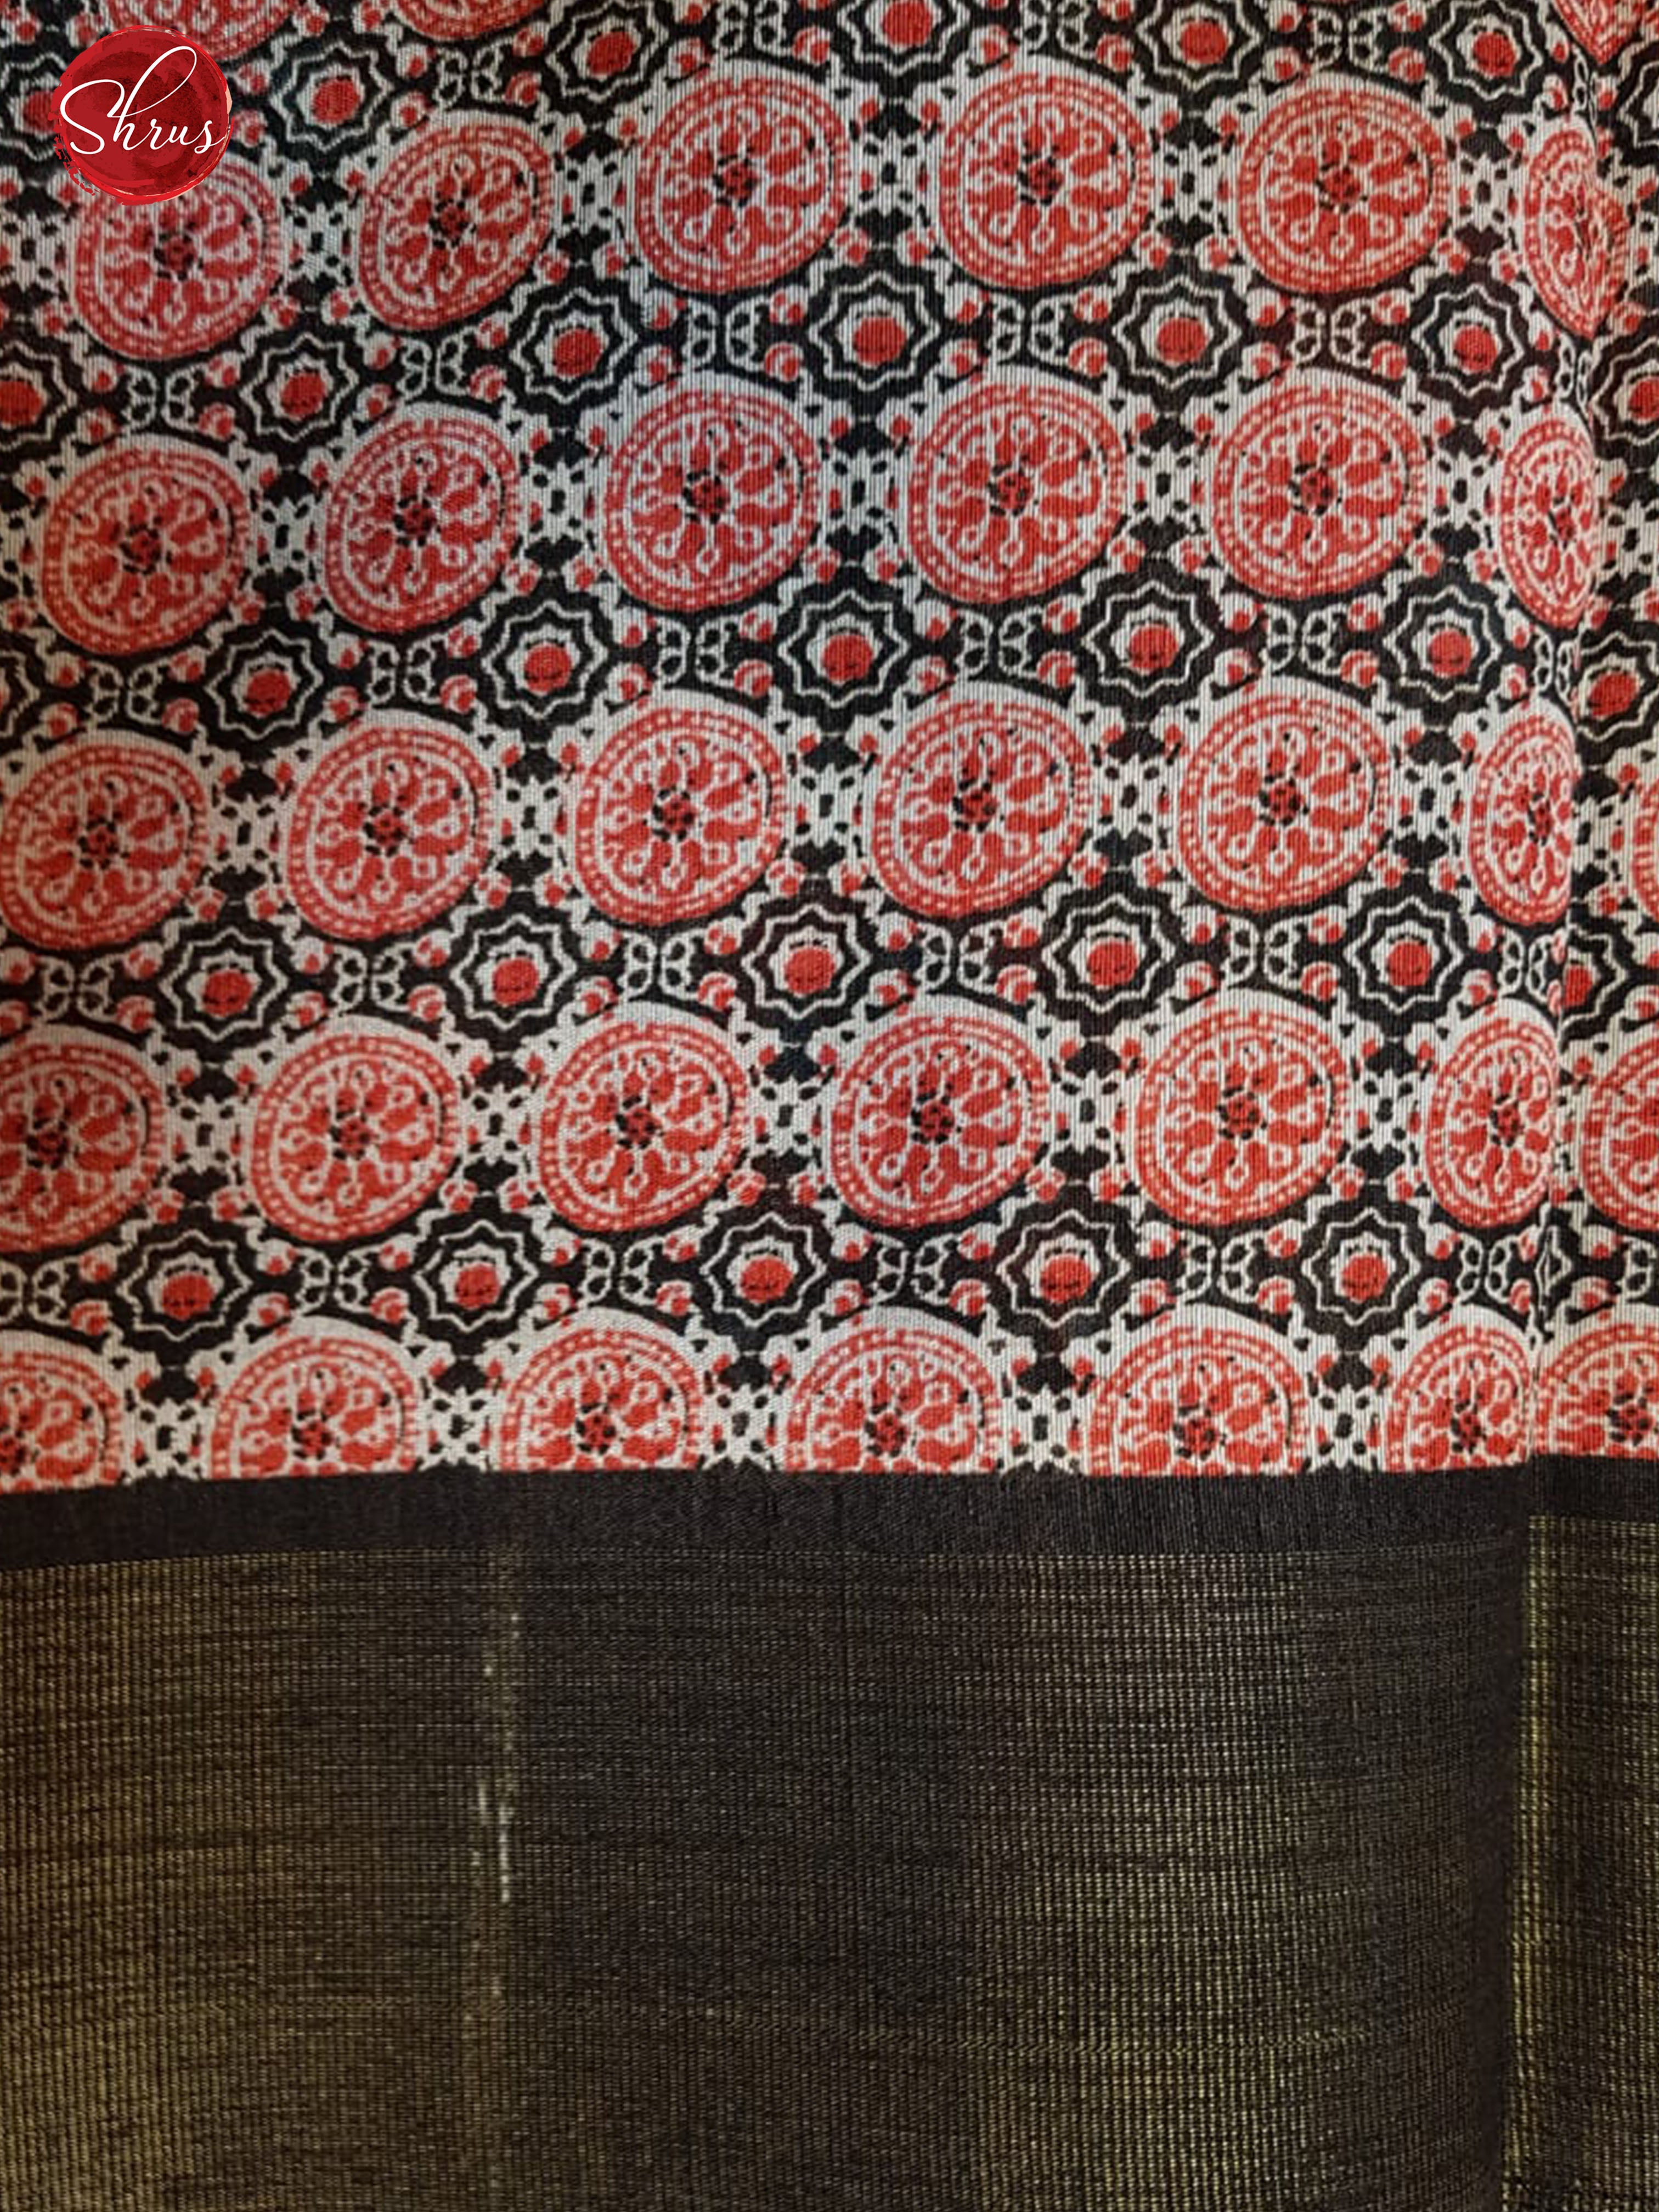 Black(Single Tone) - Semi Jute with patola floral print on the body & Zari Border - Shop on ShrusEternity.com